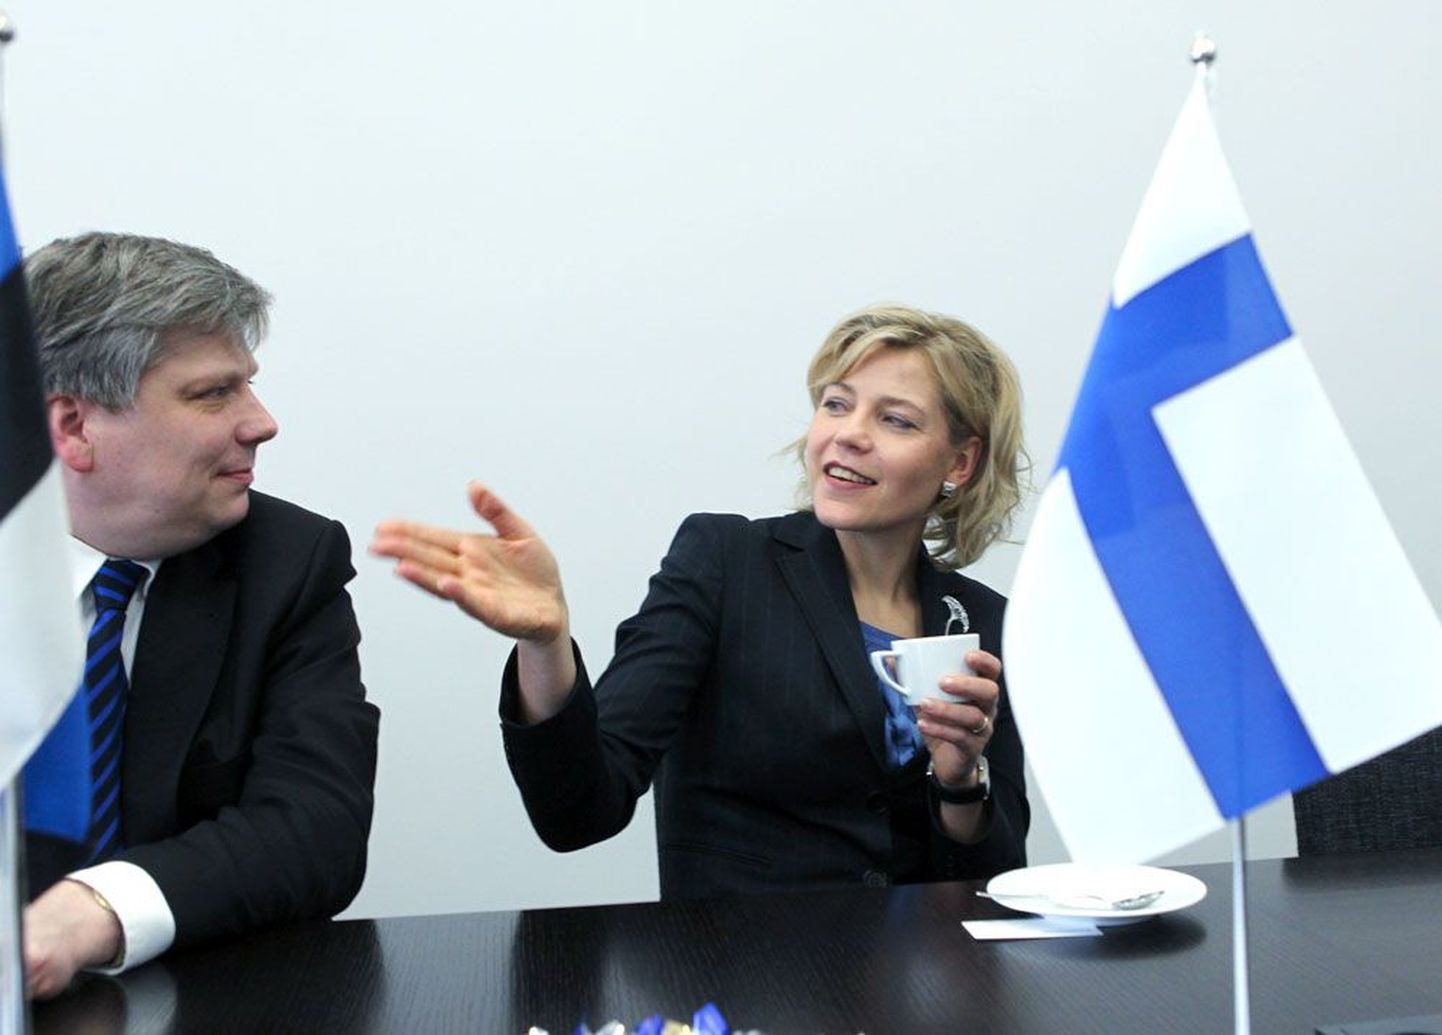 Regionaalminister Siim Kiisler vahetamas mõtteid eile Tallinna külastanud Soome kolleegi Henna Virkkuneniga.